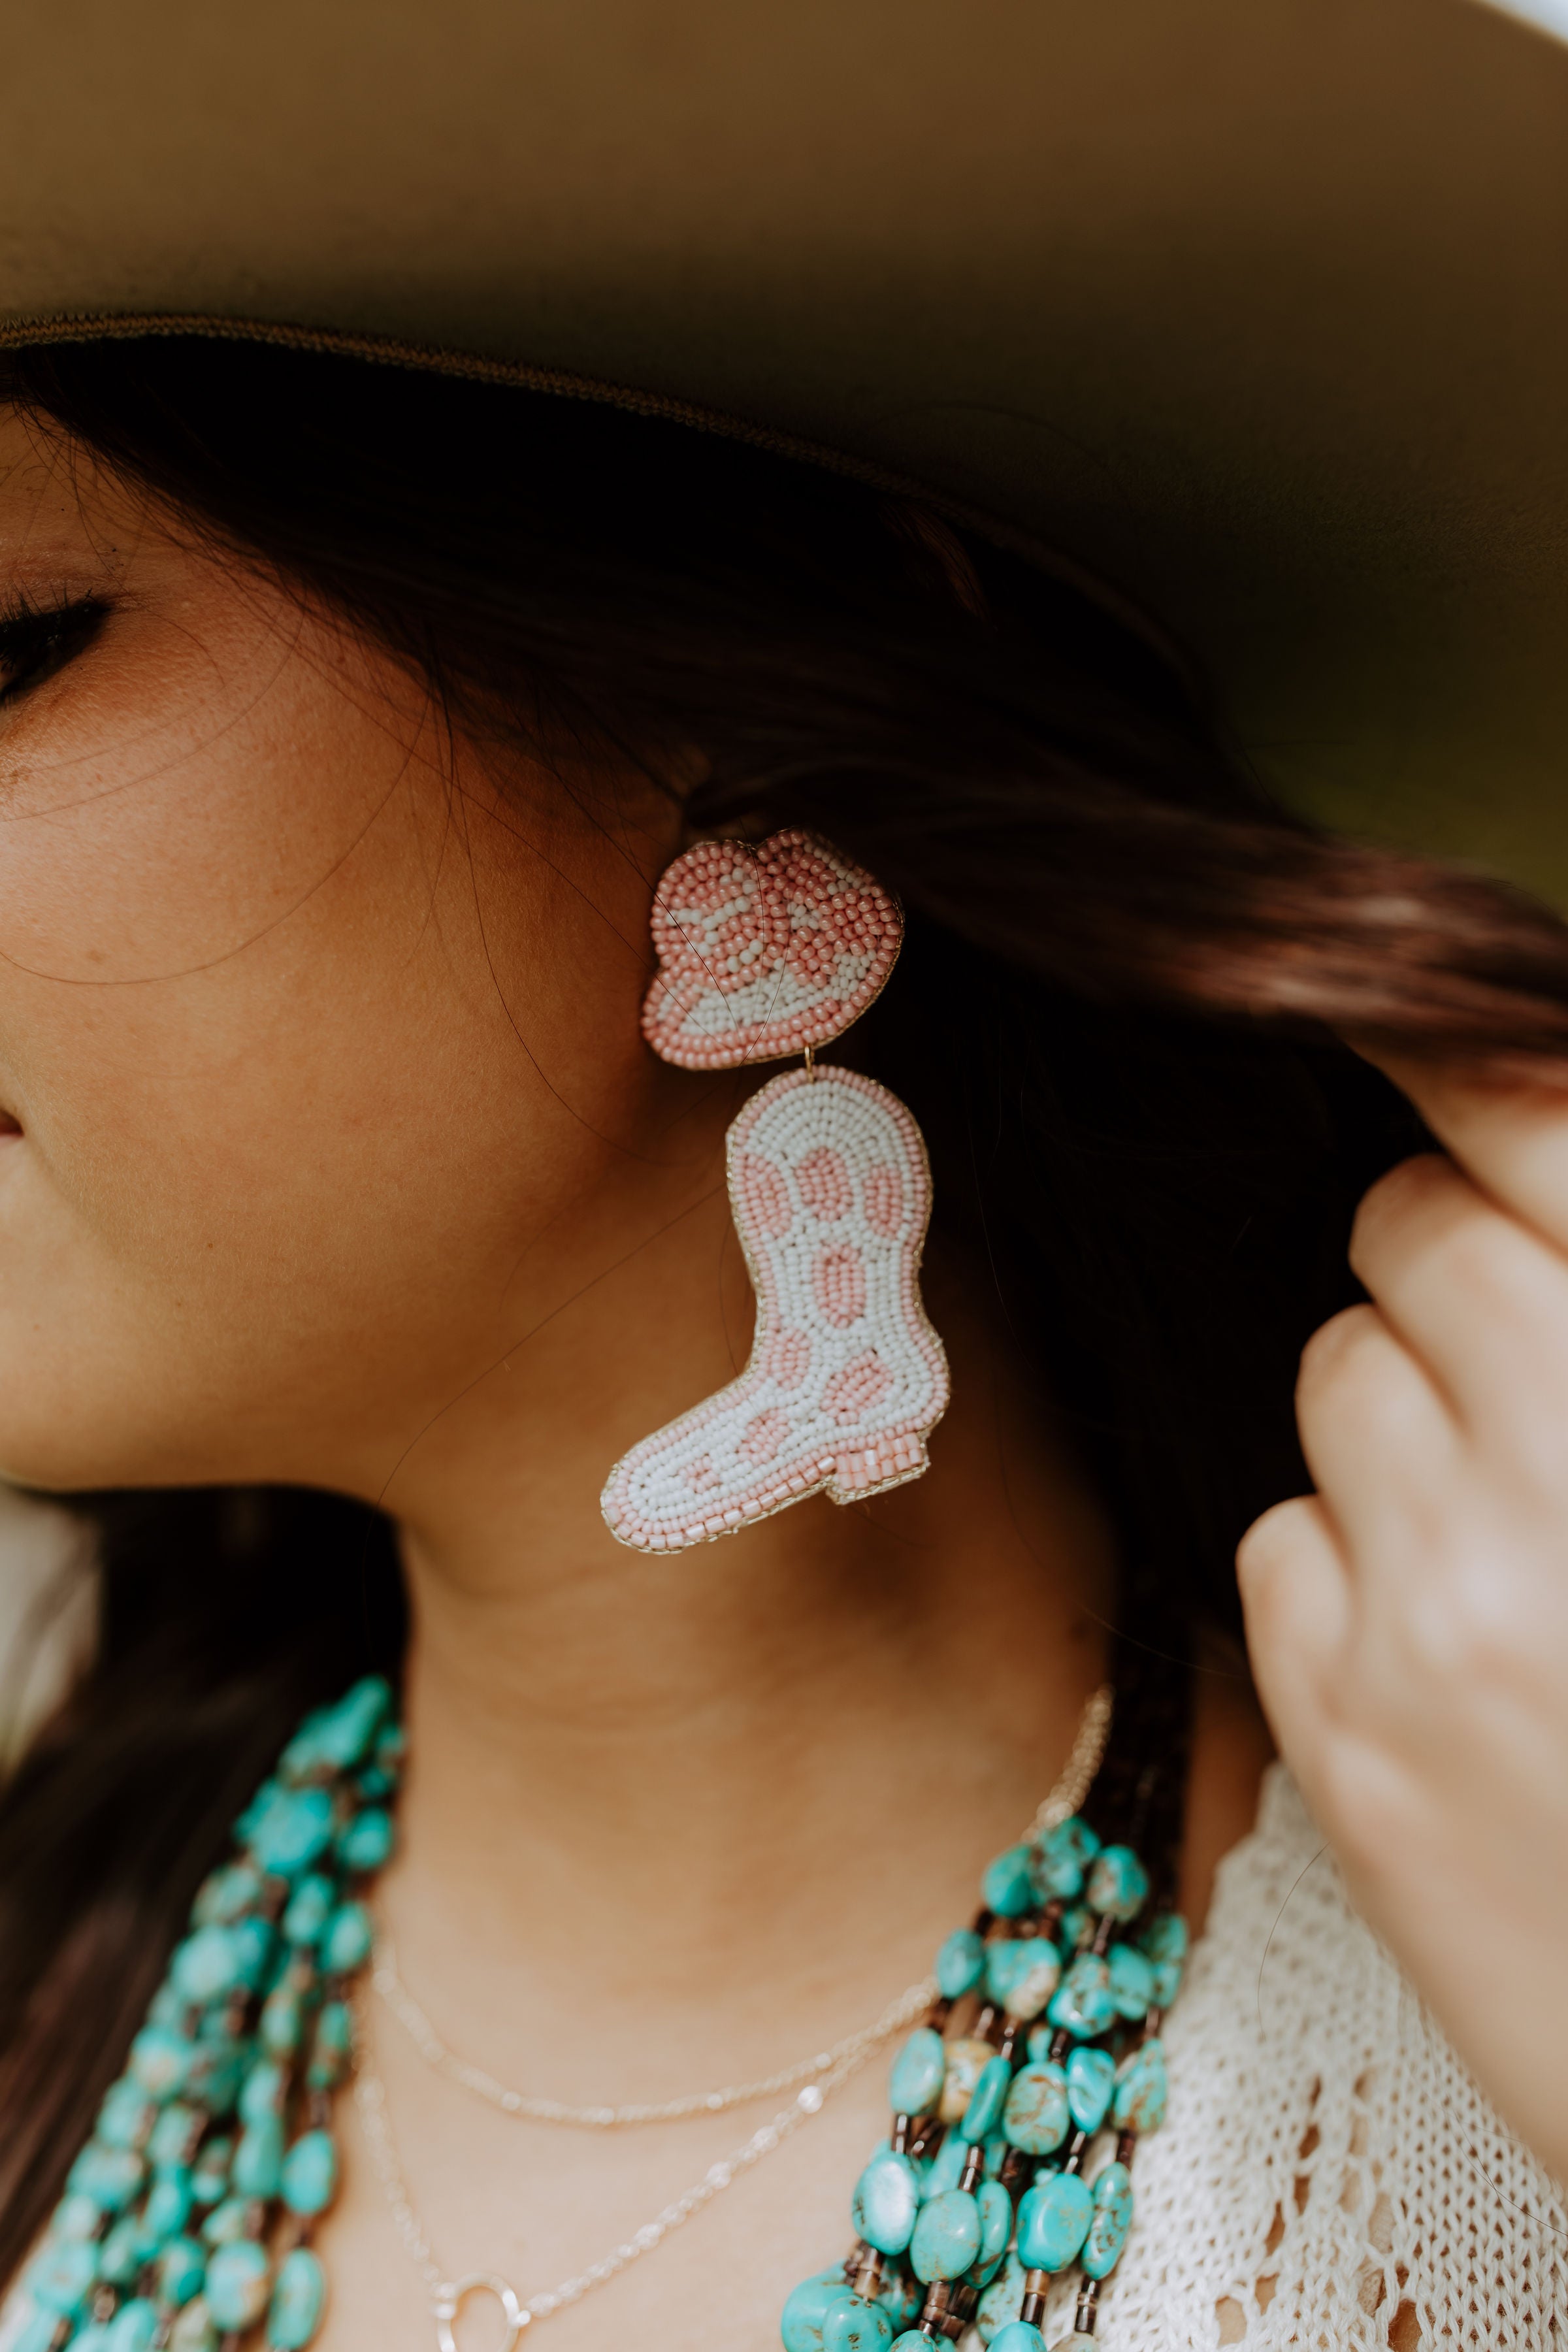 Beaded cowboy boot pink earrings